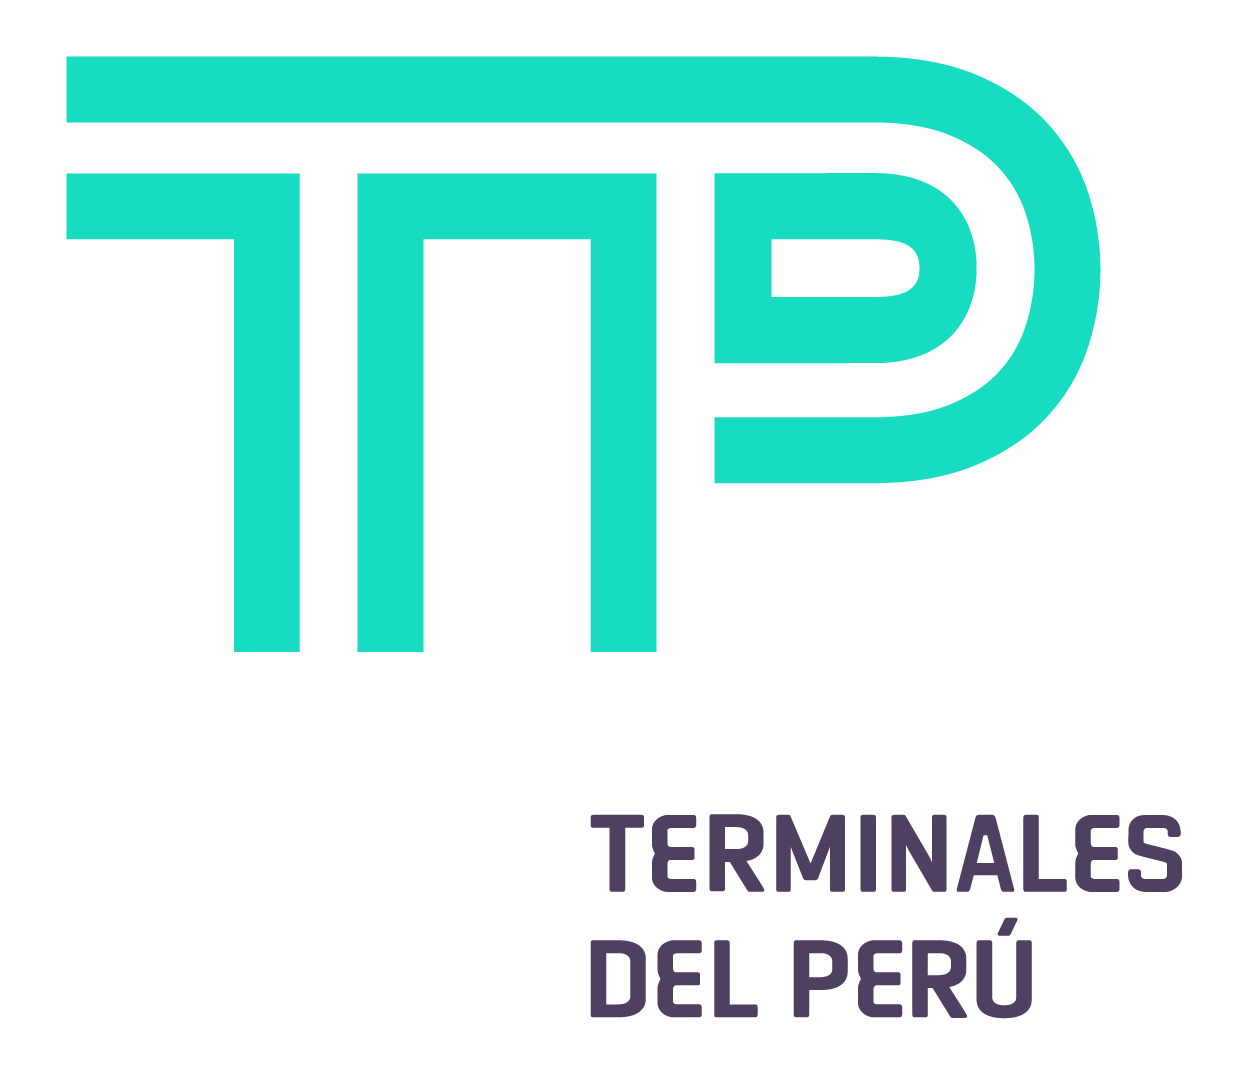 Logo TERMINALES DEL PERU.jpg  by Jennizon